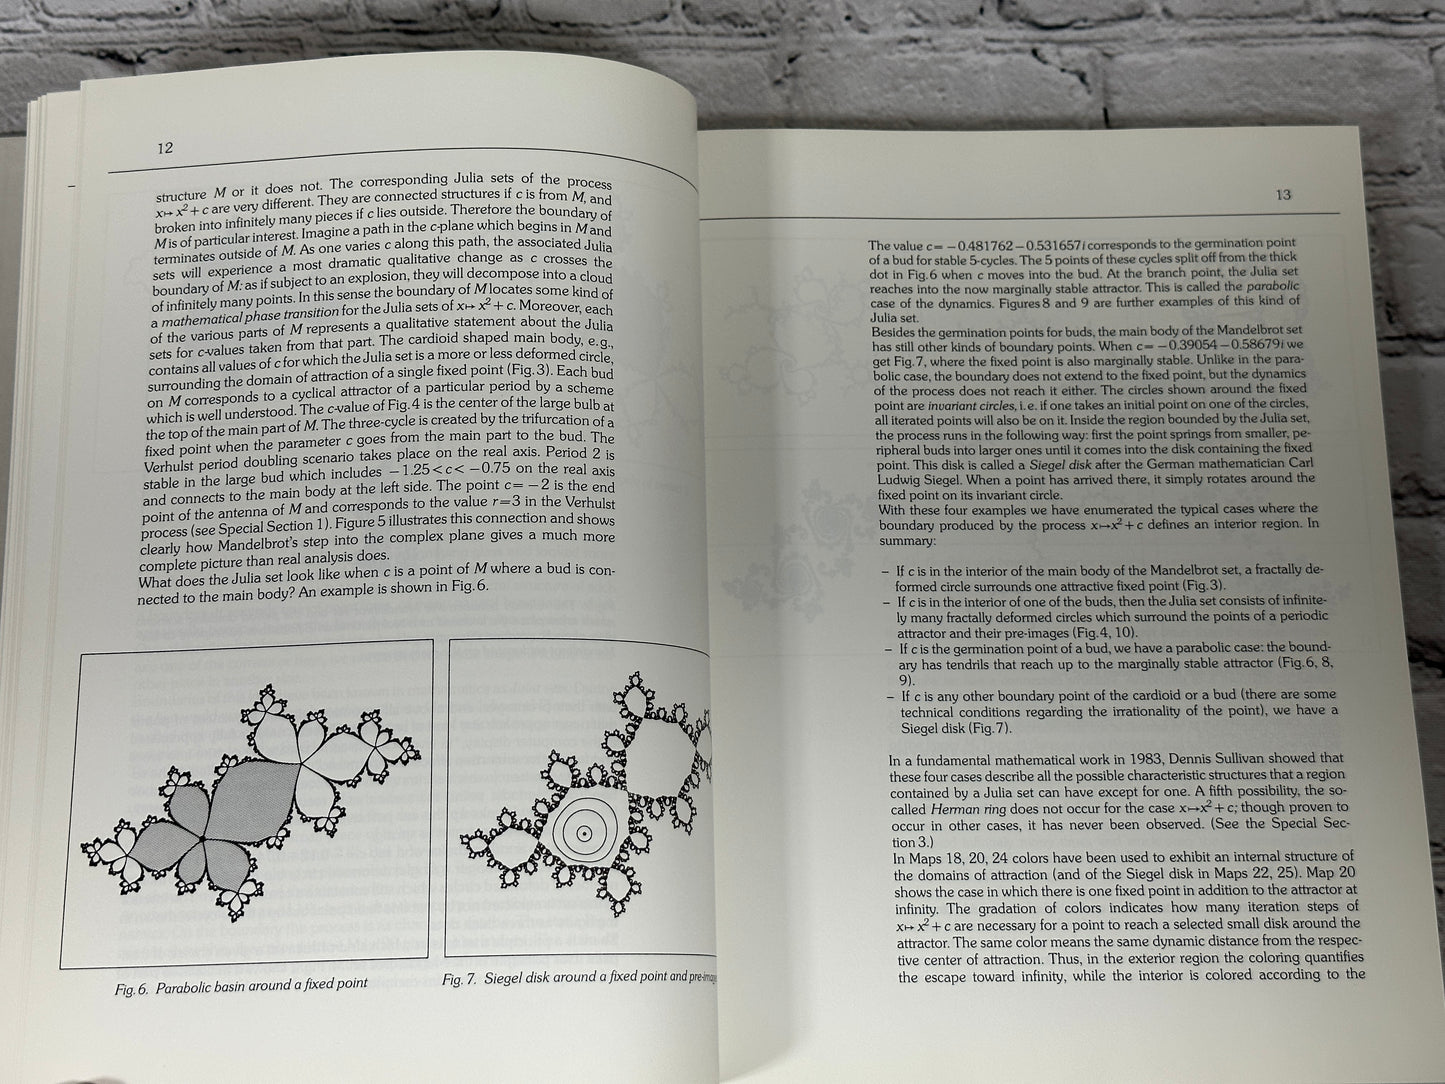 The Beauty of Fractals by H.-O. Peitgen & P.H. Richter [1986]